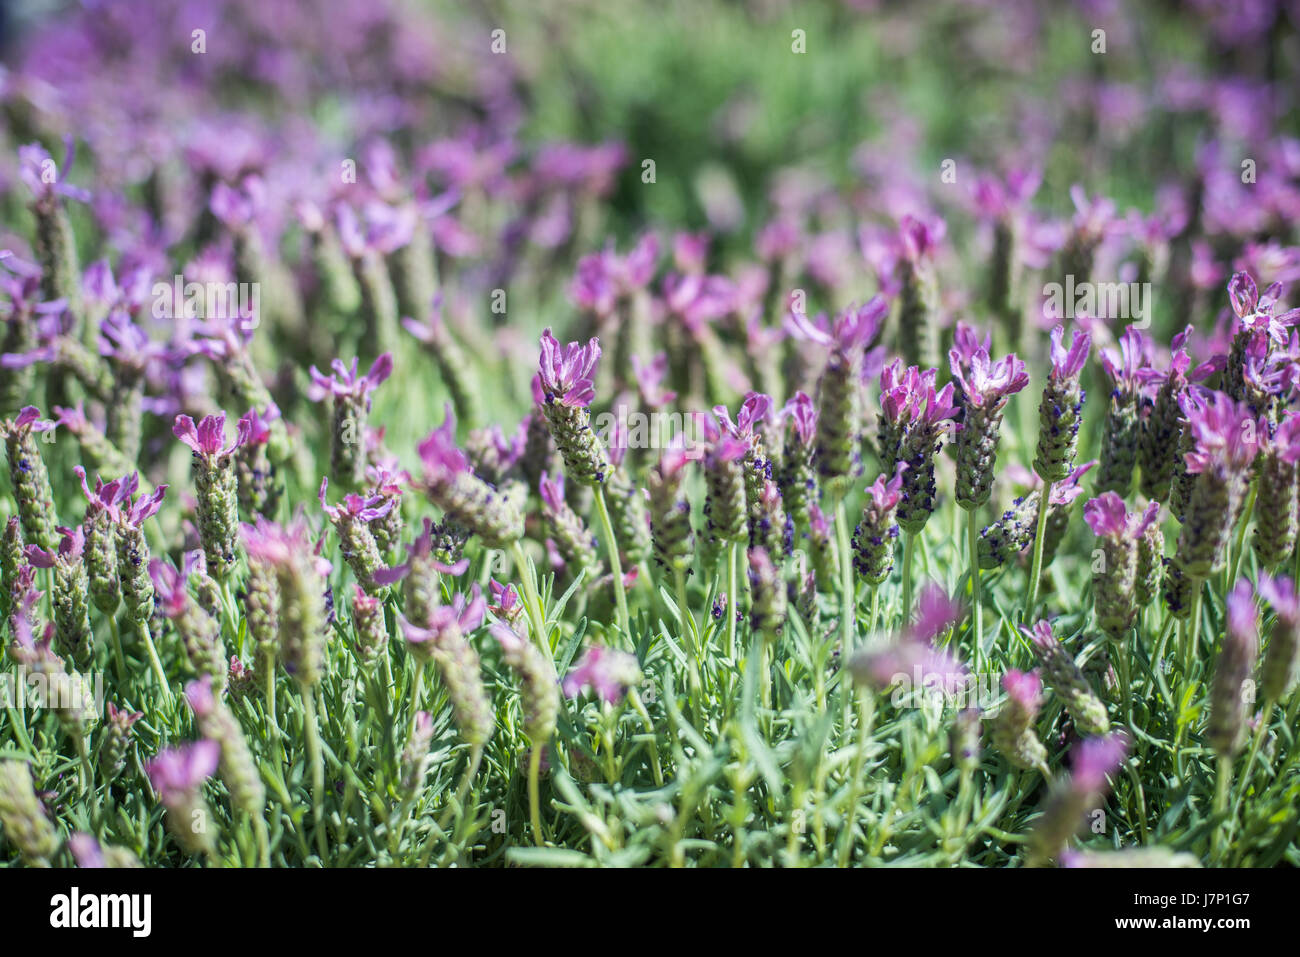 Bush lavande close up, de nombreuses fleurs violet pourpre sur fond flou artistique Banque D'Images